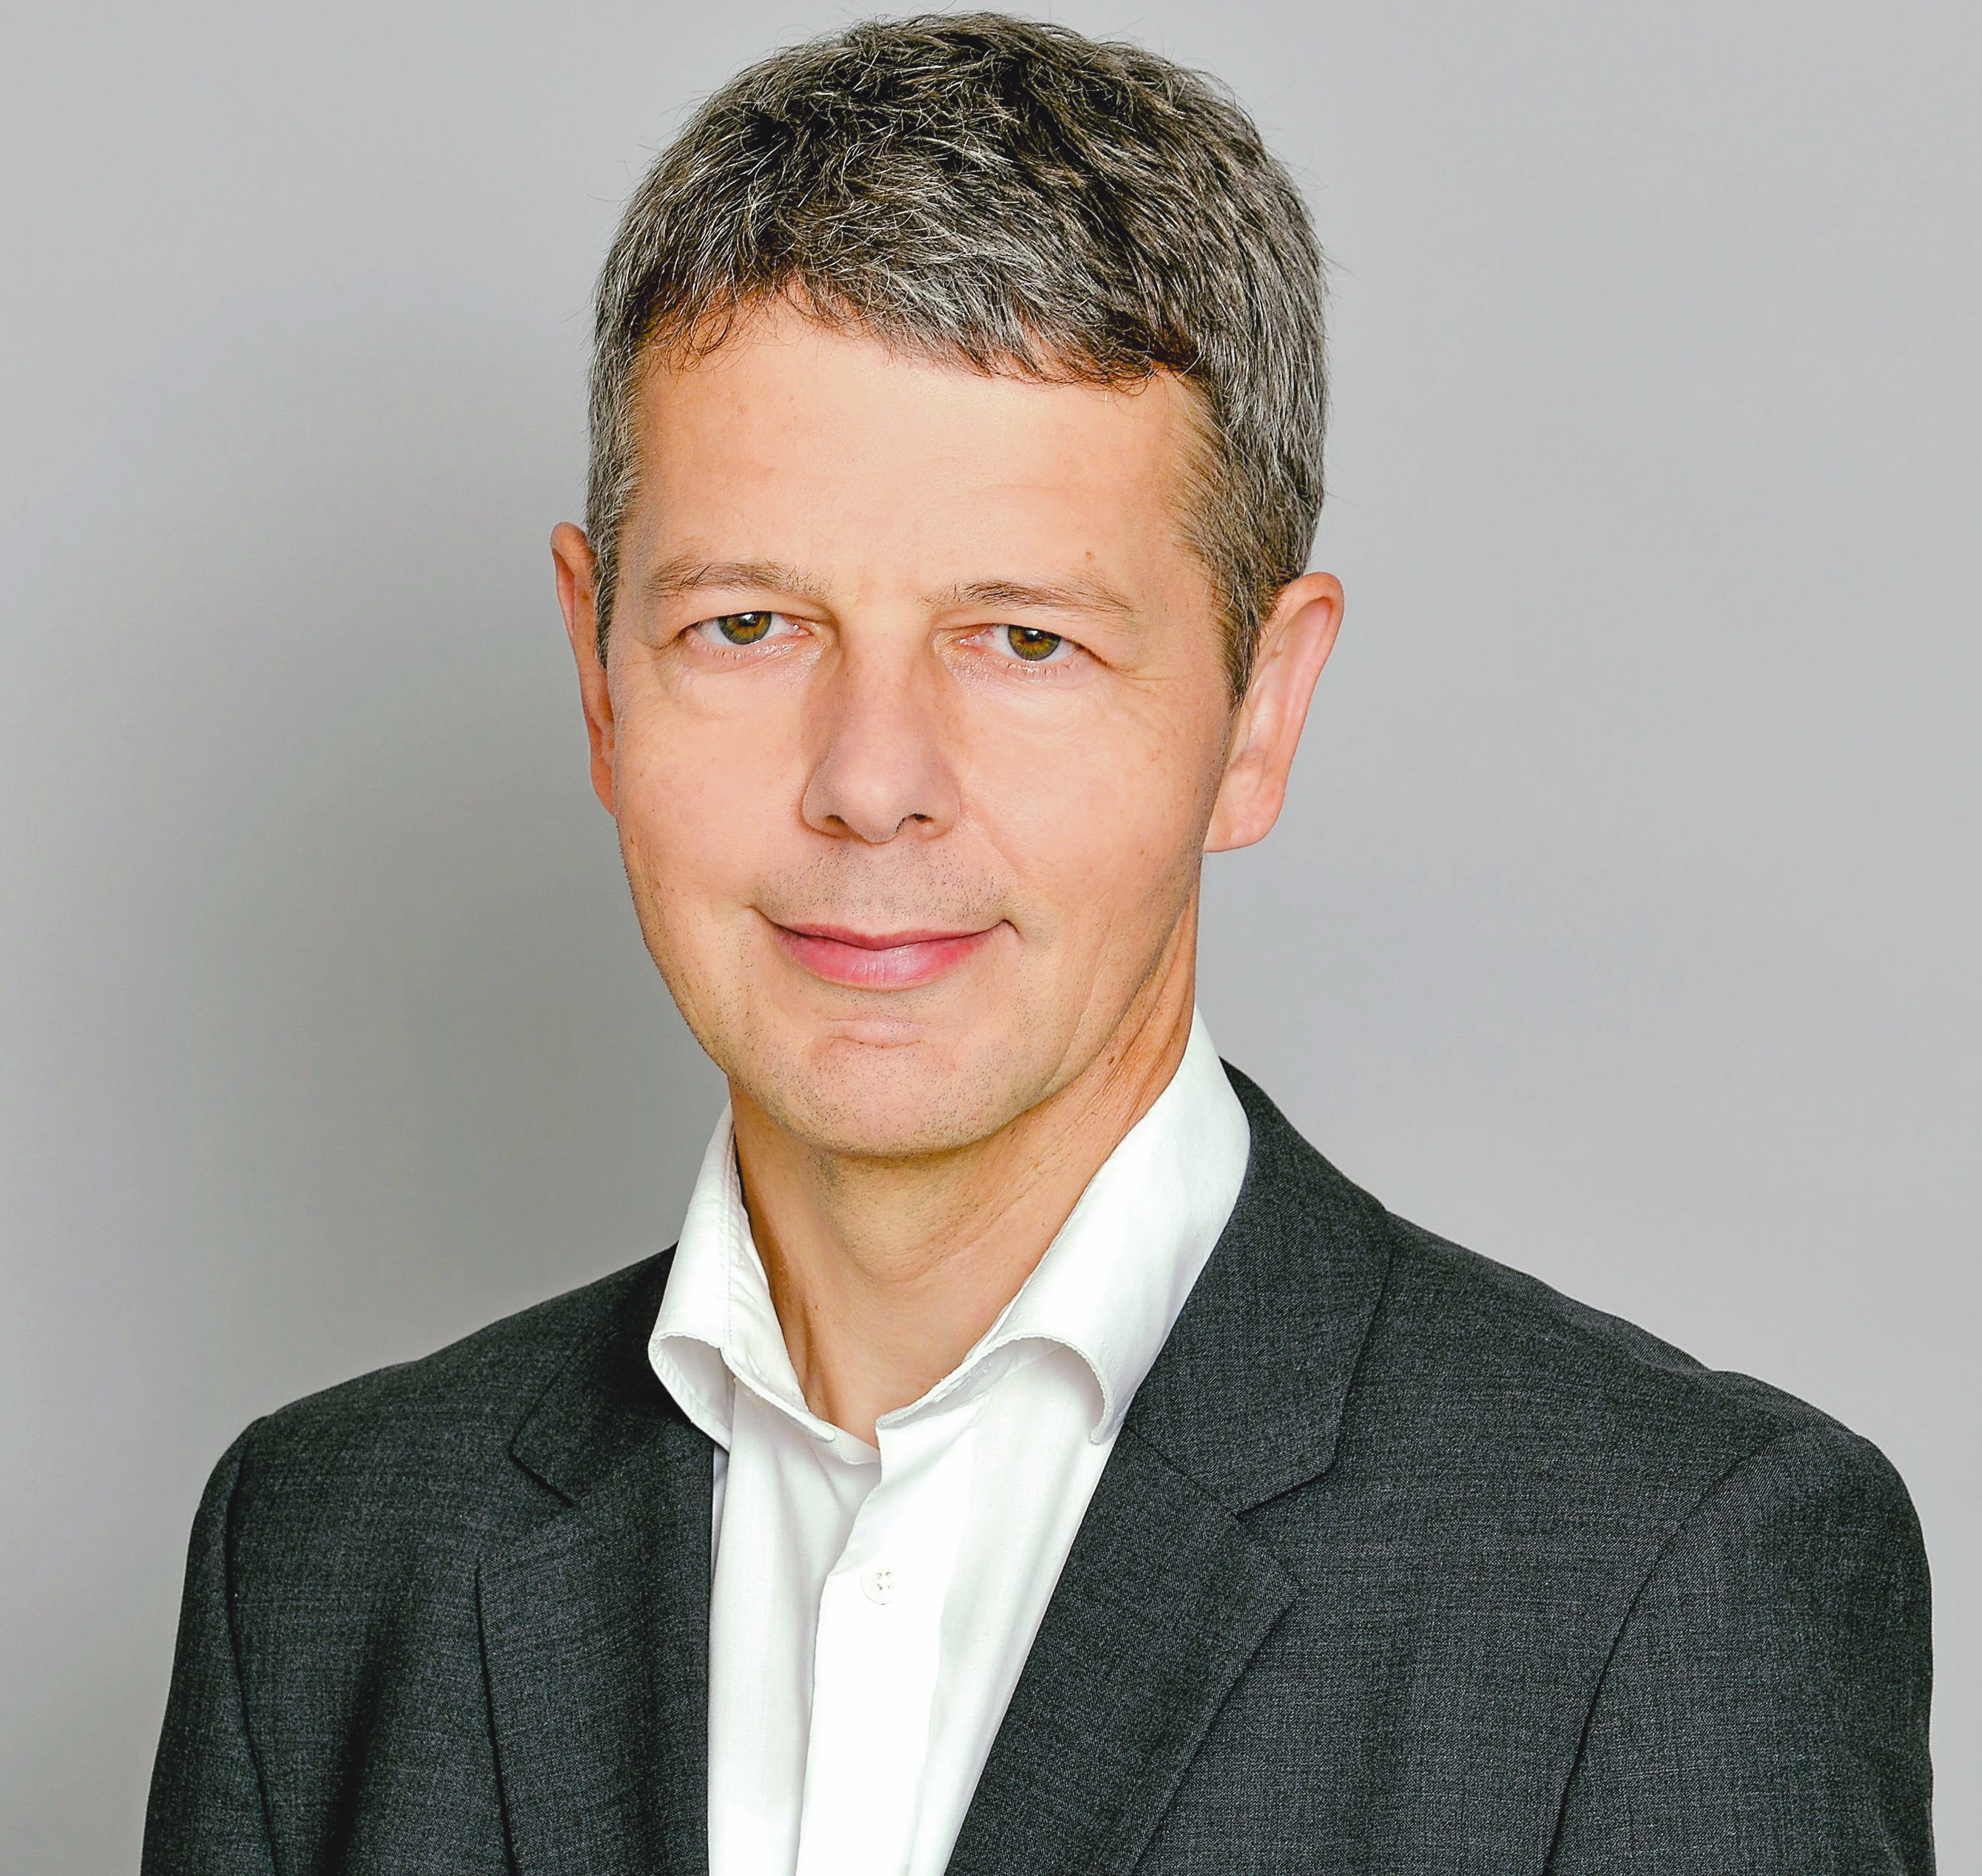 Paul Stallmeister, Berufsberater in der Agentur für Arbeit Ahlen-Münster. Foto: Agentur für Arbeit